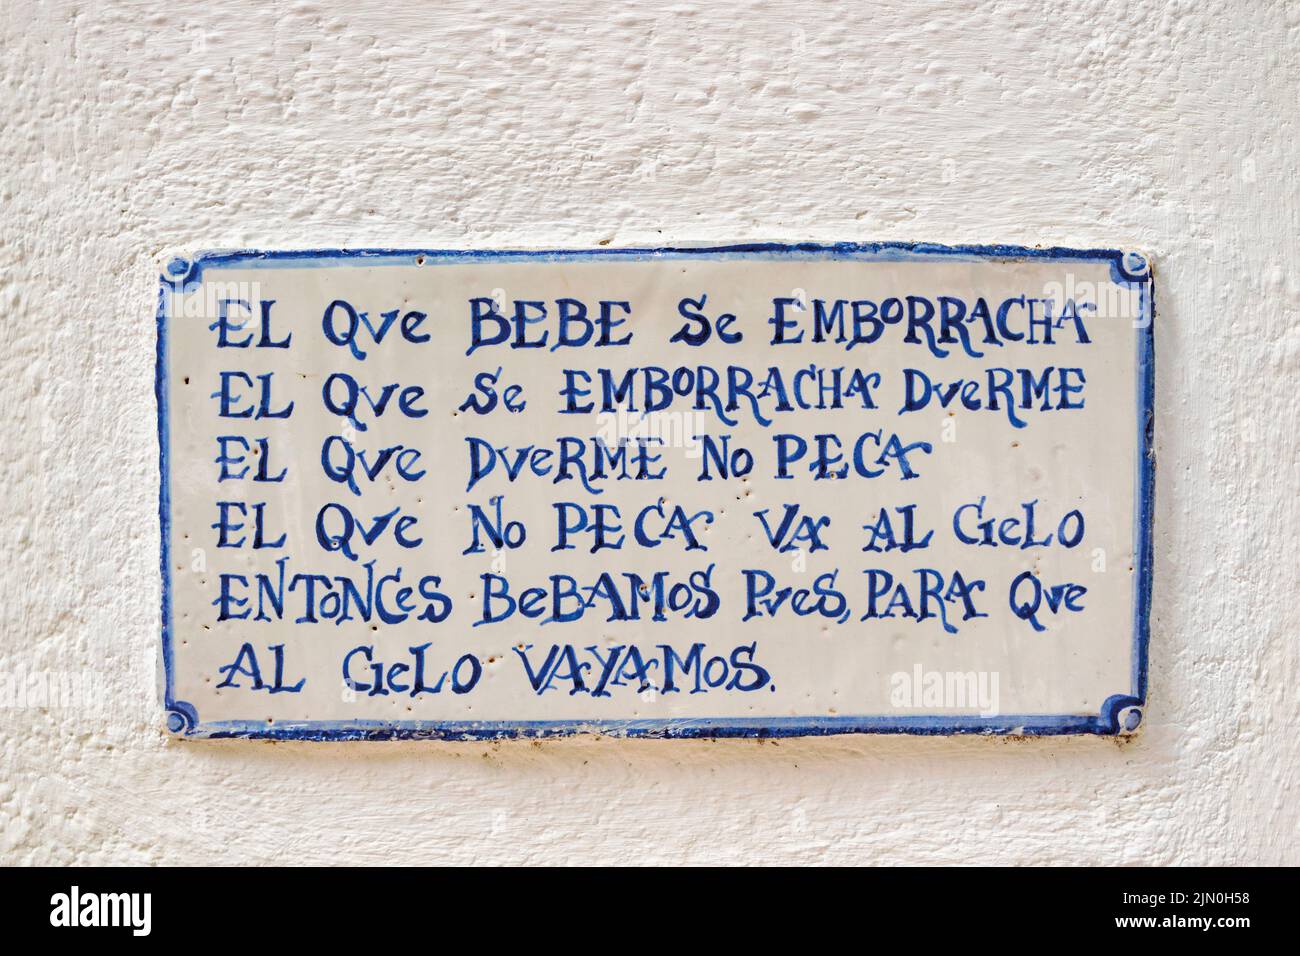 Céramique avec un toast inscrit dans la langue espagnole dans le patio de Casa Palacio Bandolero, Cordoue, province de Cordoue, Andalousie, sud de l'Espagne. Banque D'Images